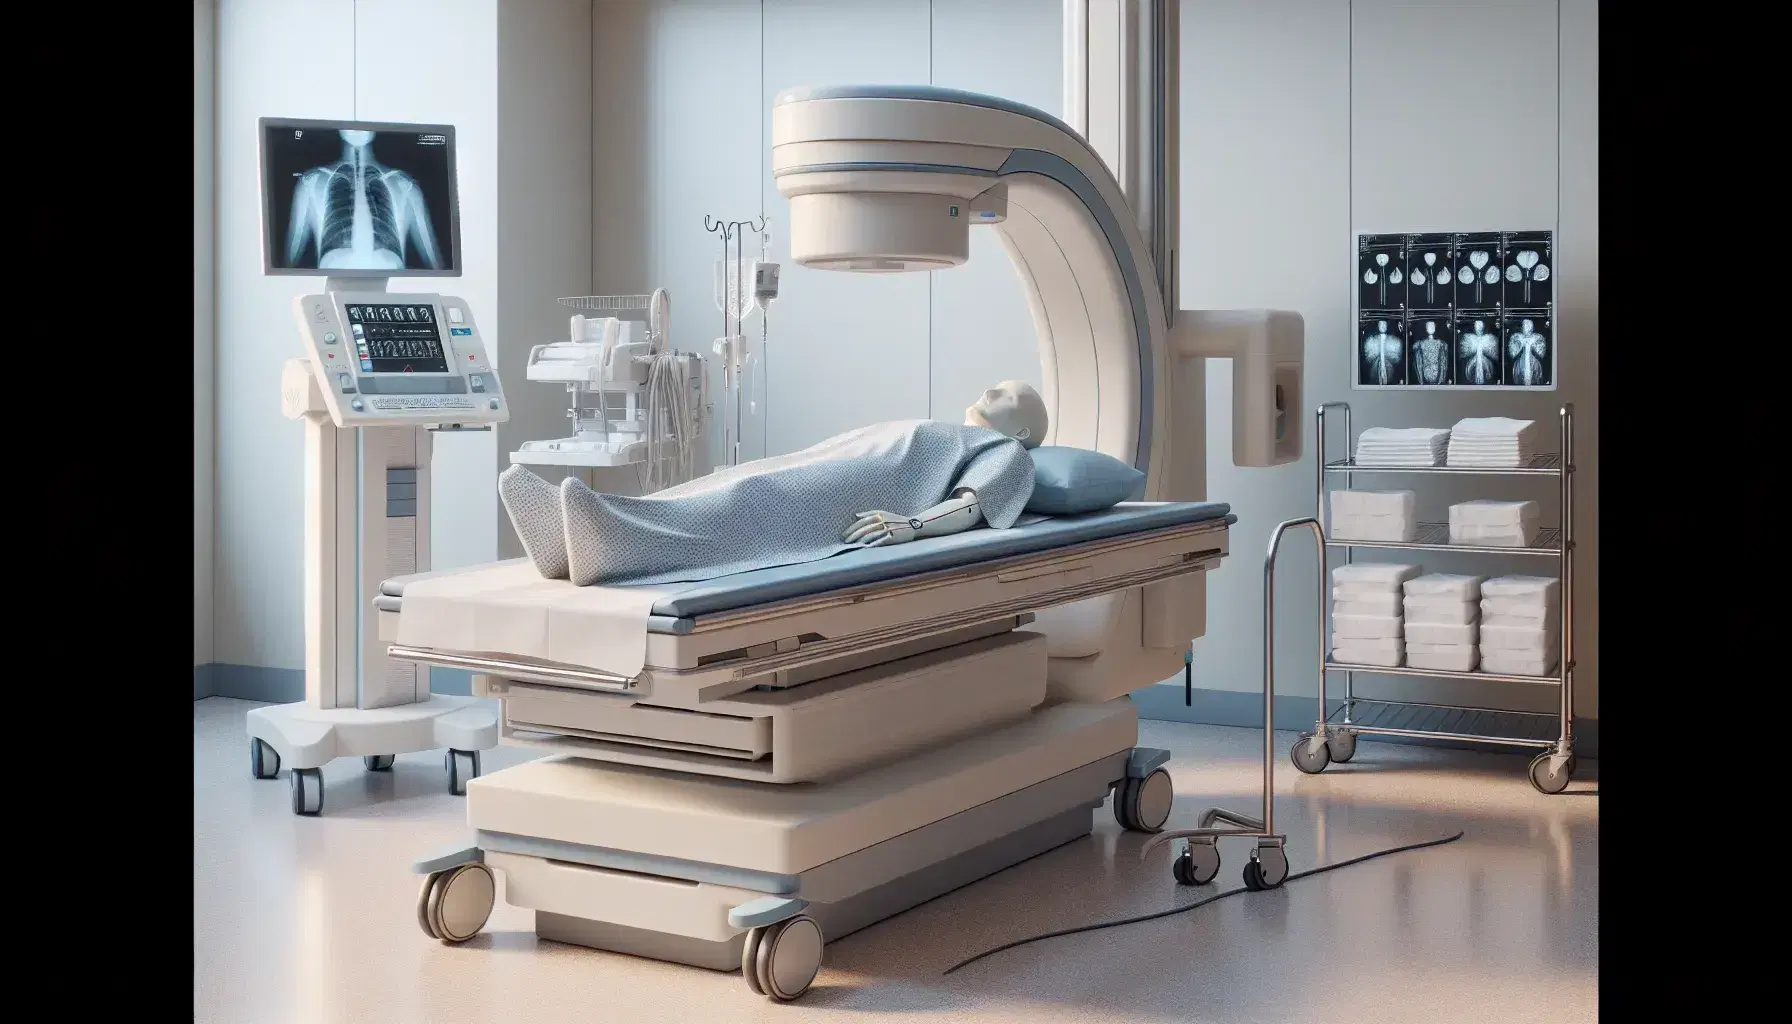 Sala de radiología con cama hospitalaria y paciente acostado, máquina de rayos X y carro con suministros médicos, ambiente estéril.